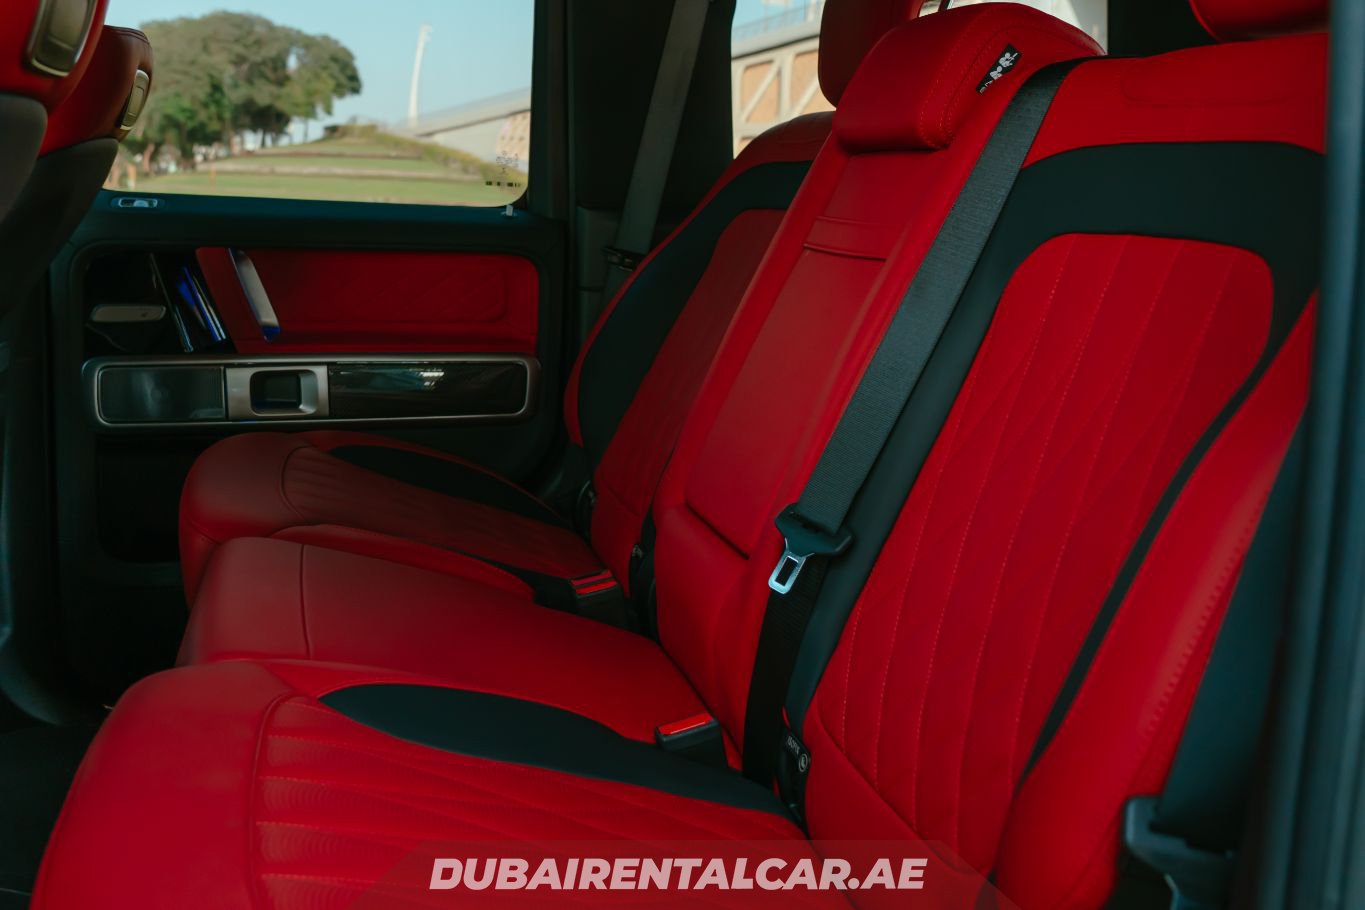 Dubai Rental Car